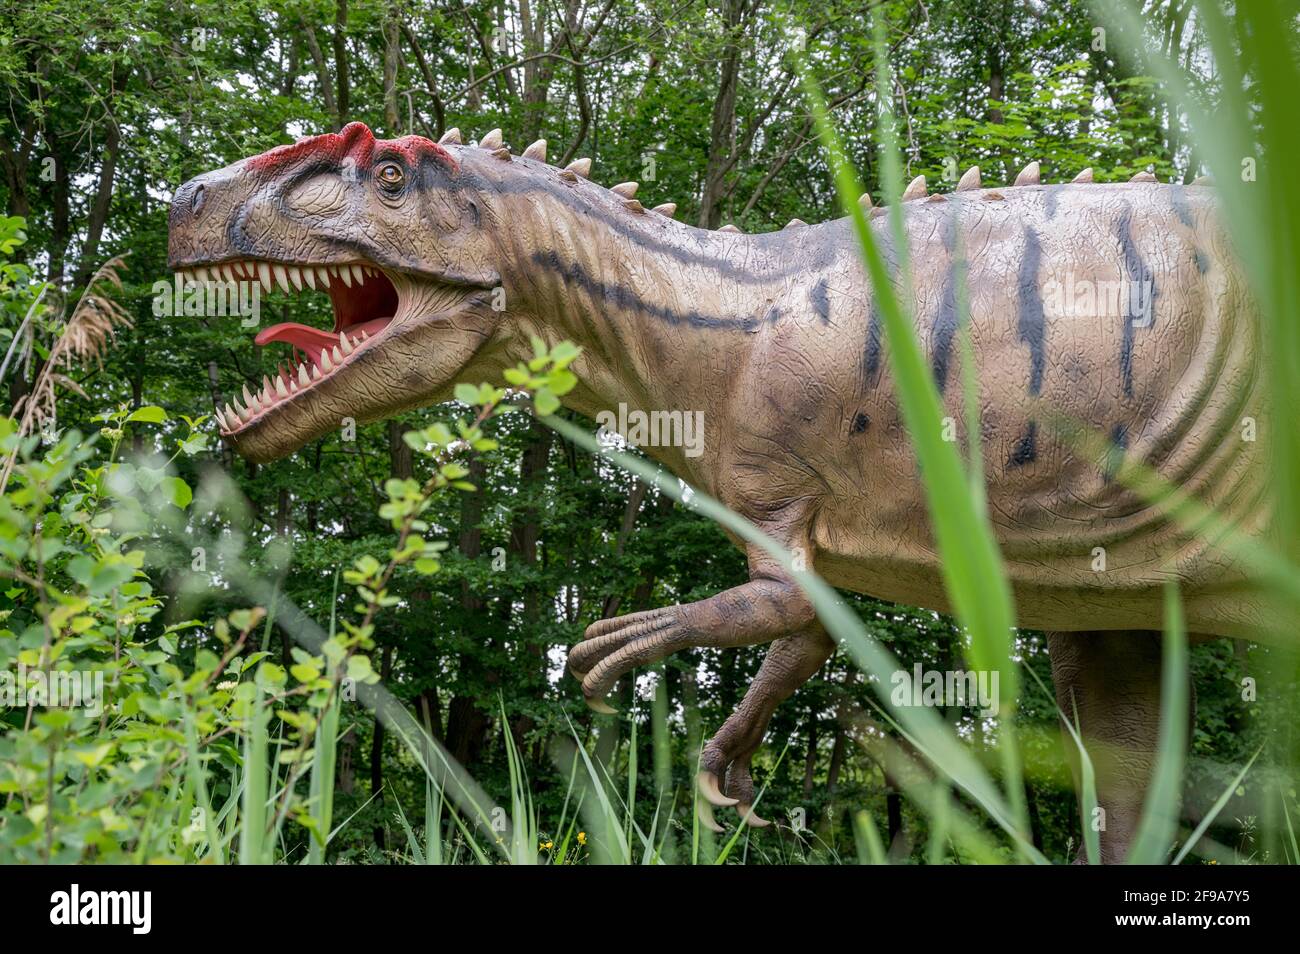 Dinosaure Allosaurus (semblable au Tyrannosaurus) comme modèle dans le Dinopark Münchehagen près de Hanovre. Vécu il y a environ 150 millions d'années (fin de la période jurassique) en Amérique du Nord et en Europe, était d'environ 9m de long et 1,5t en poids. Banque D'Images